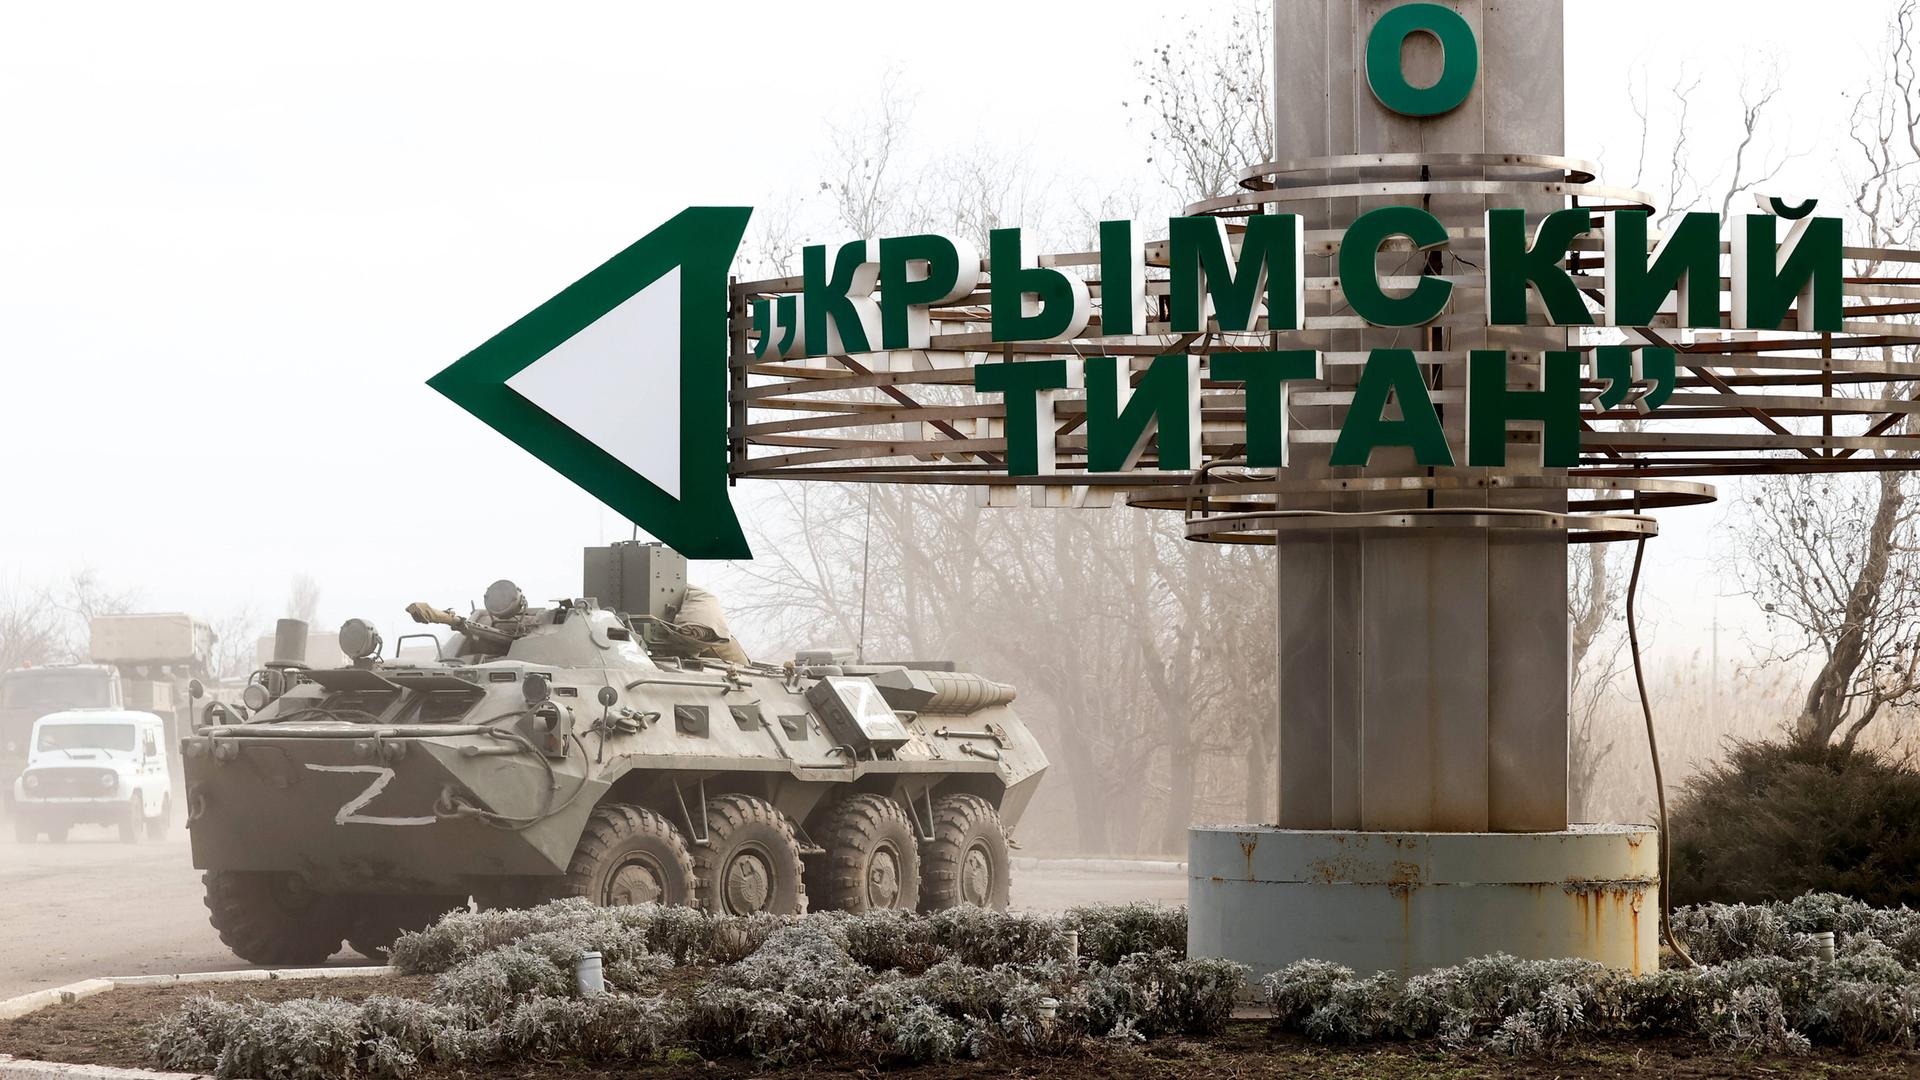 Ein Straßenschild bei dem Checkpoint Perekop an der ukrainischen Grenze weist den Weg zu der Titan-Anlage in Armyansk auf der Krim, neben dem Schild ein Panzer.